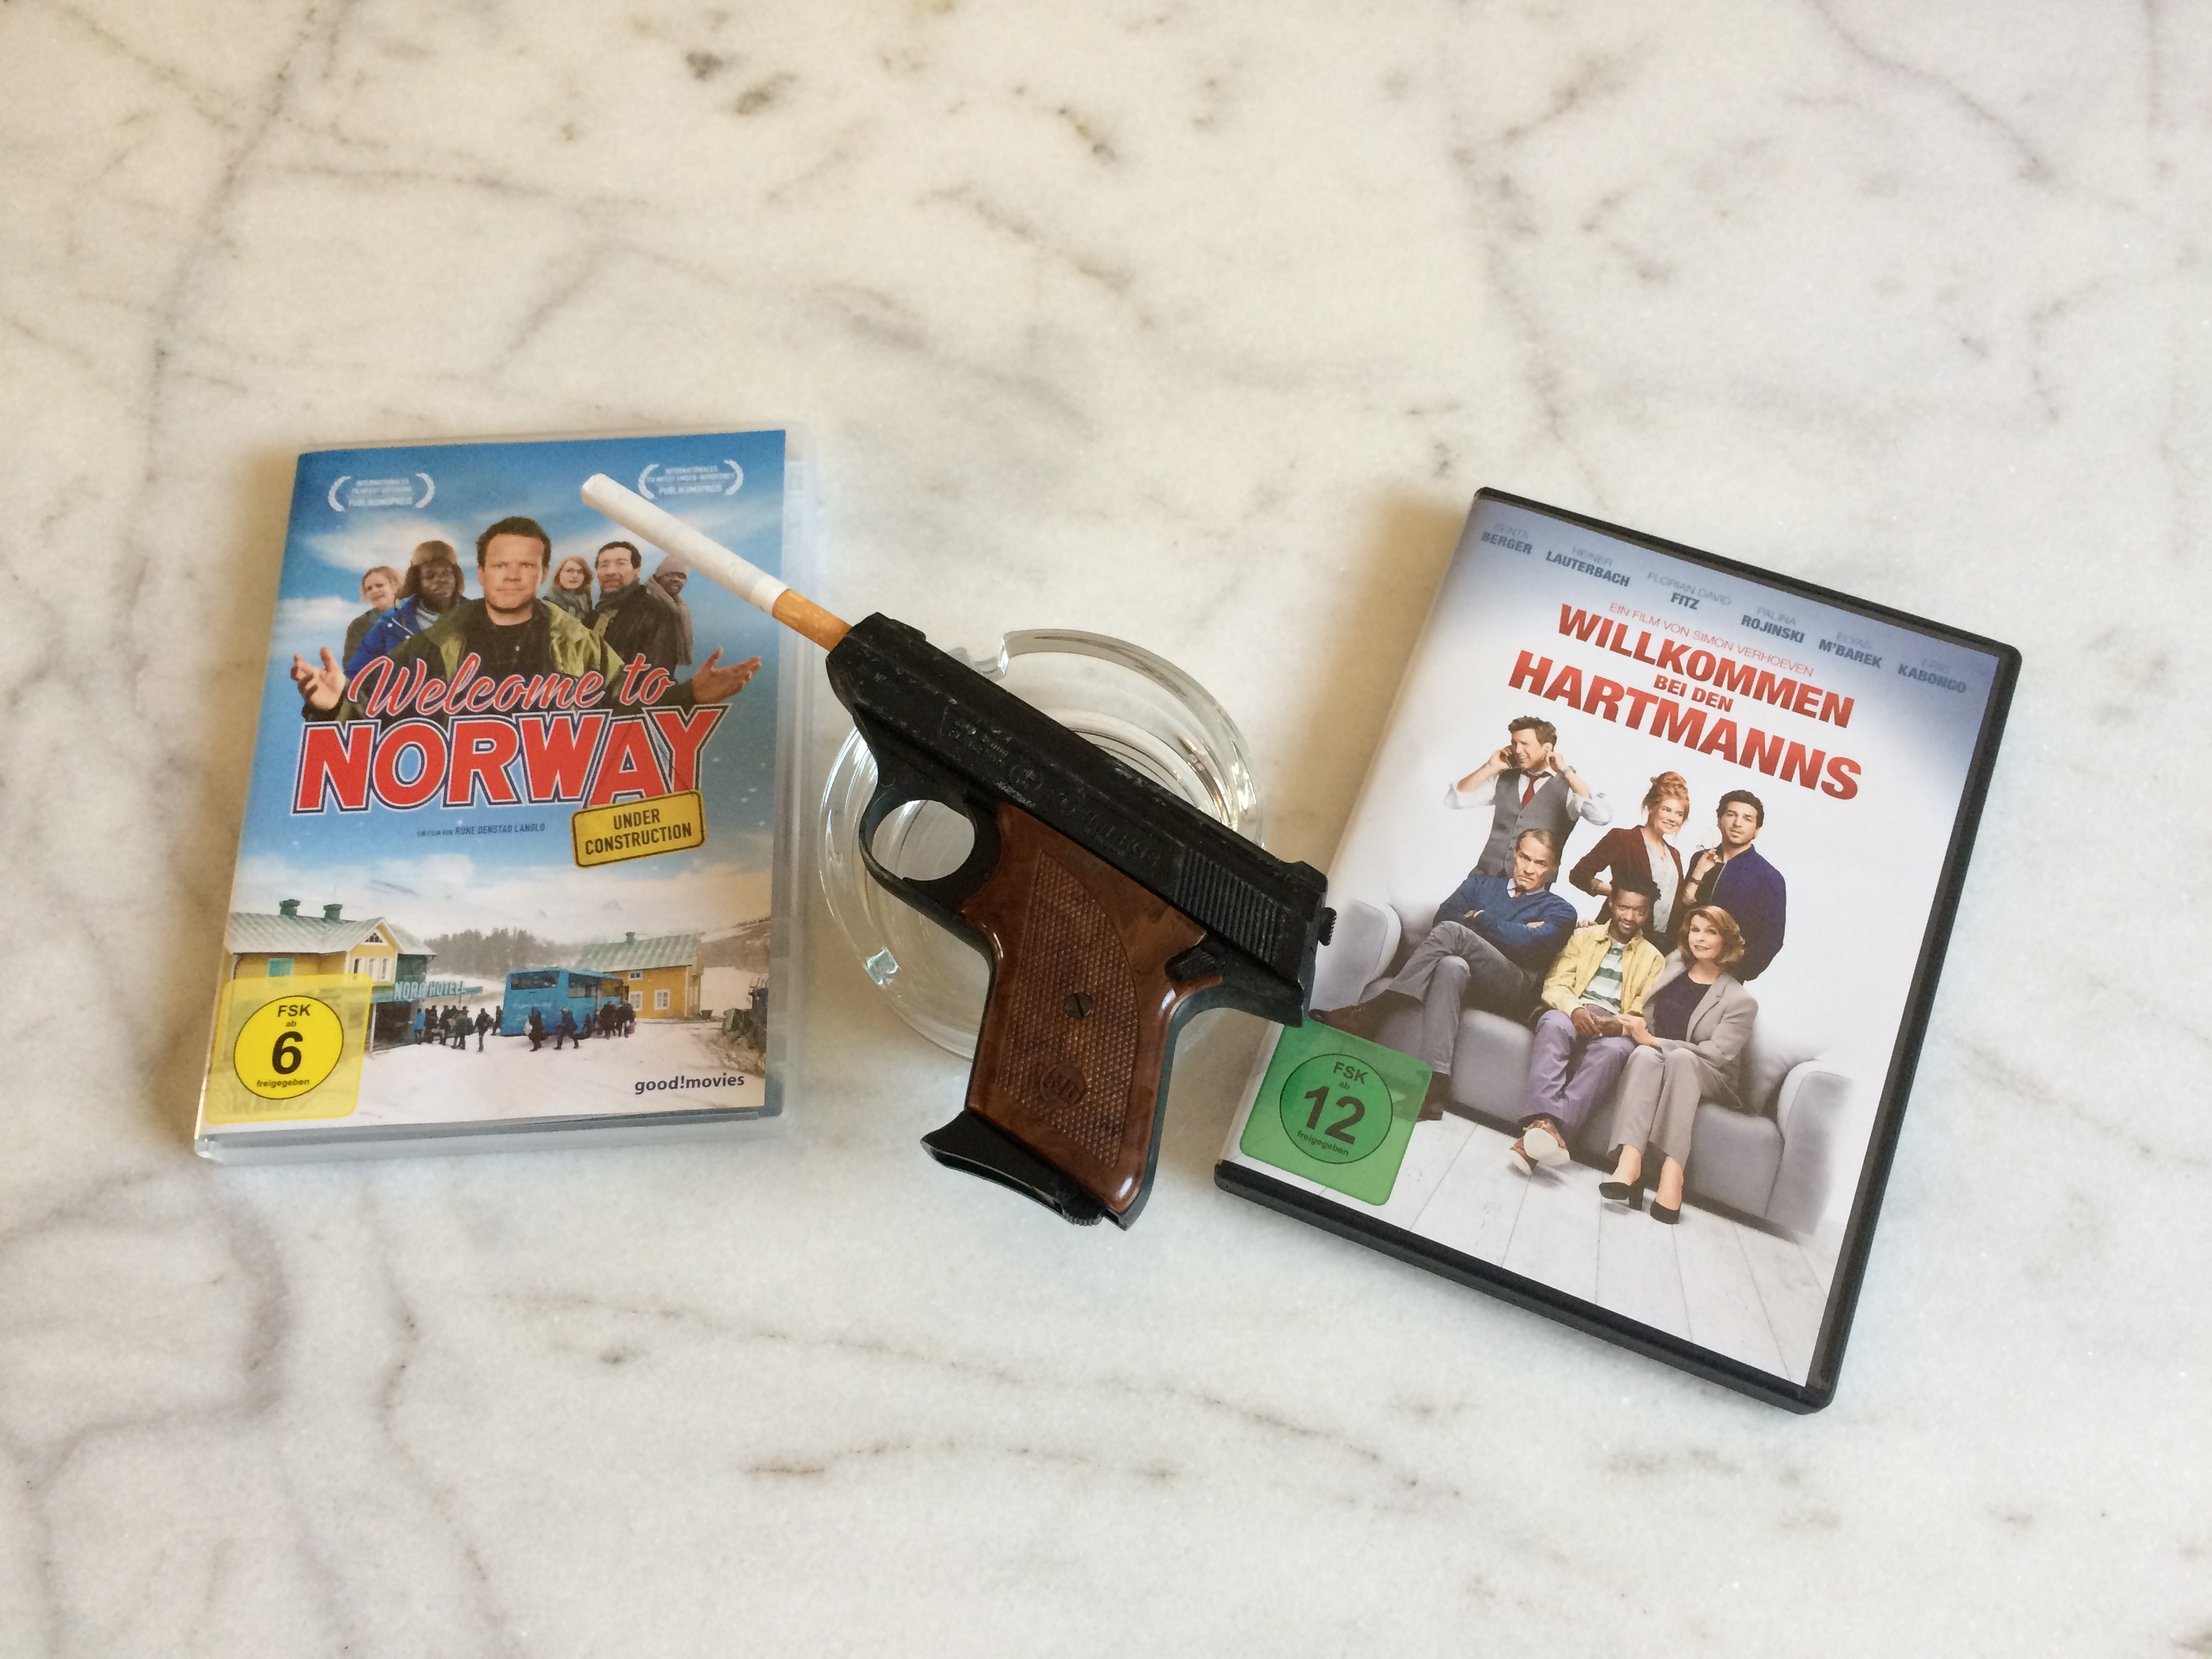 Zwei DVDs: Links des Films "Welcome to Norway", rechts von "Willkommen bei den Hartmanns". In der Mitte eine Pistole mit Filterzigarette im Lauf auf einem leeren Aschenbecher.